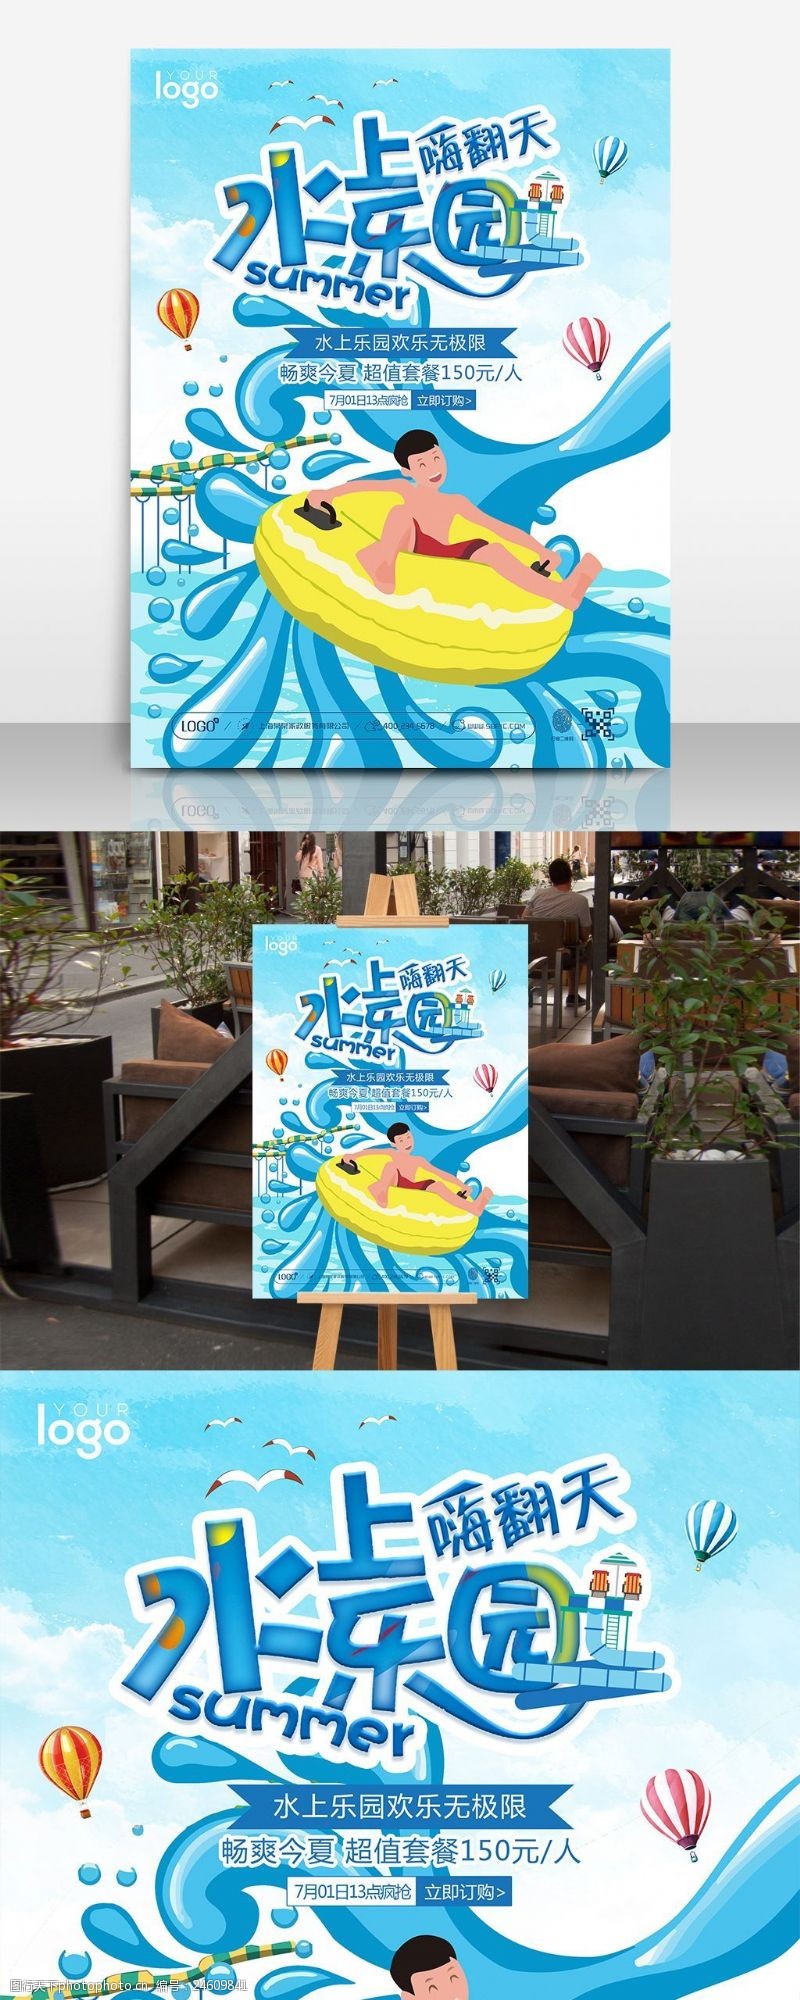 海上运动蓝色夏季水上乐园嗨翻天游乐园促销海报